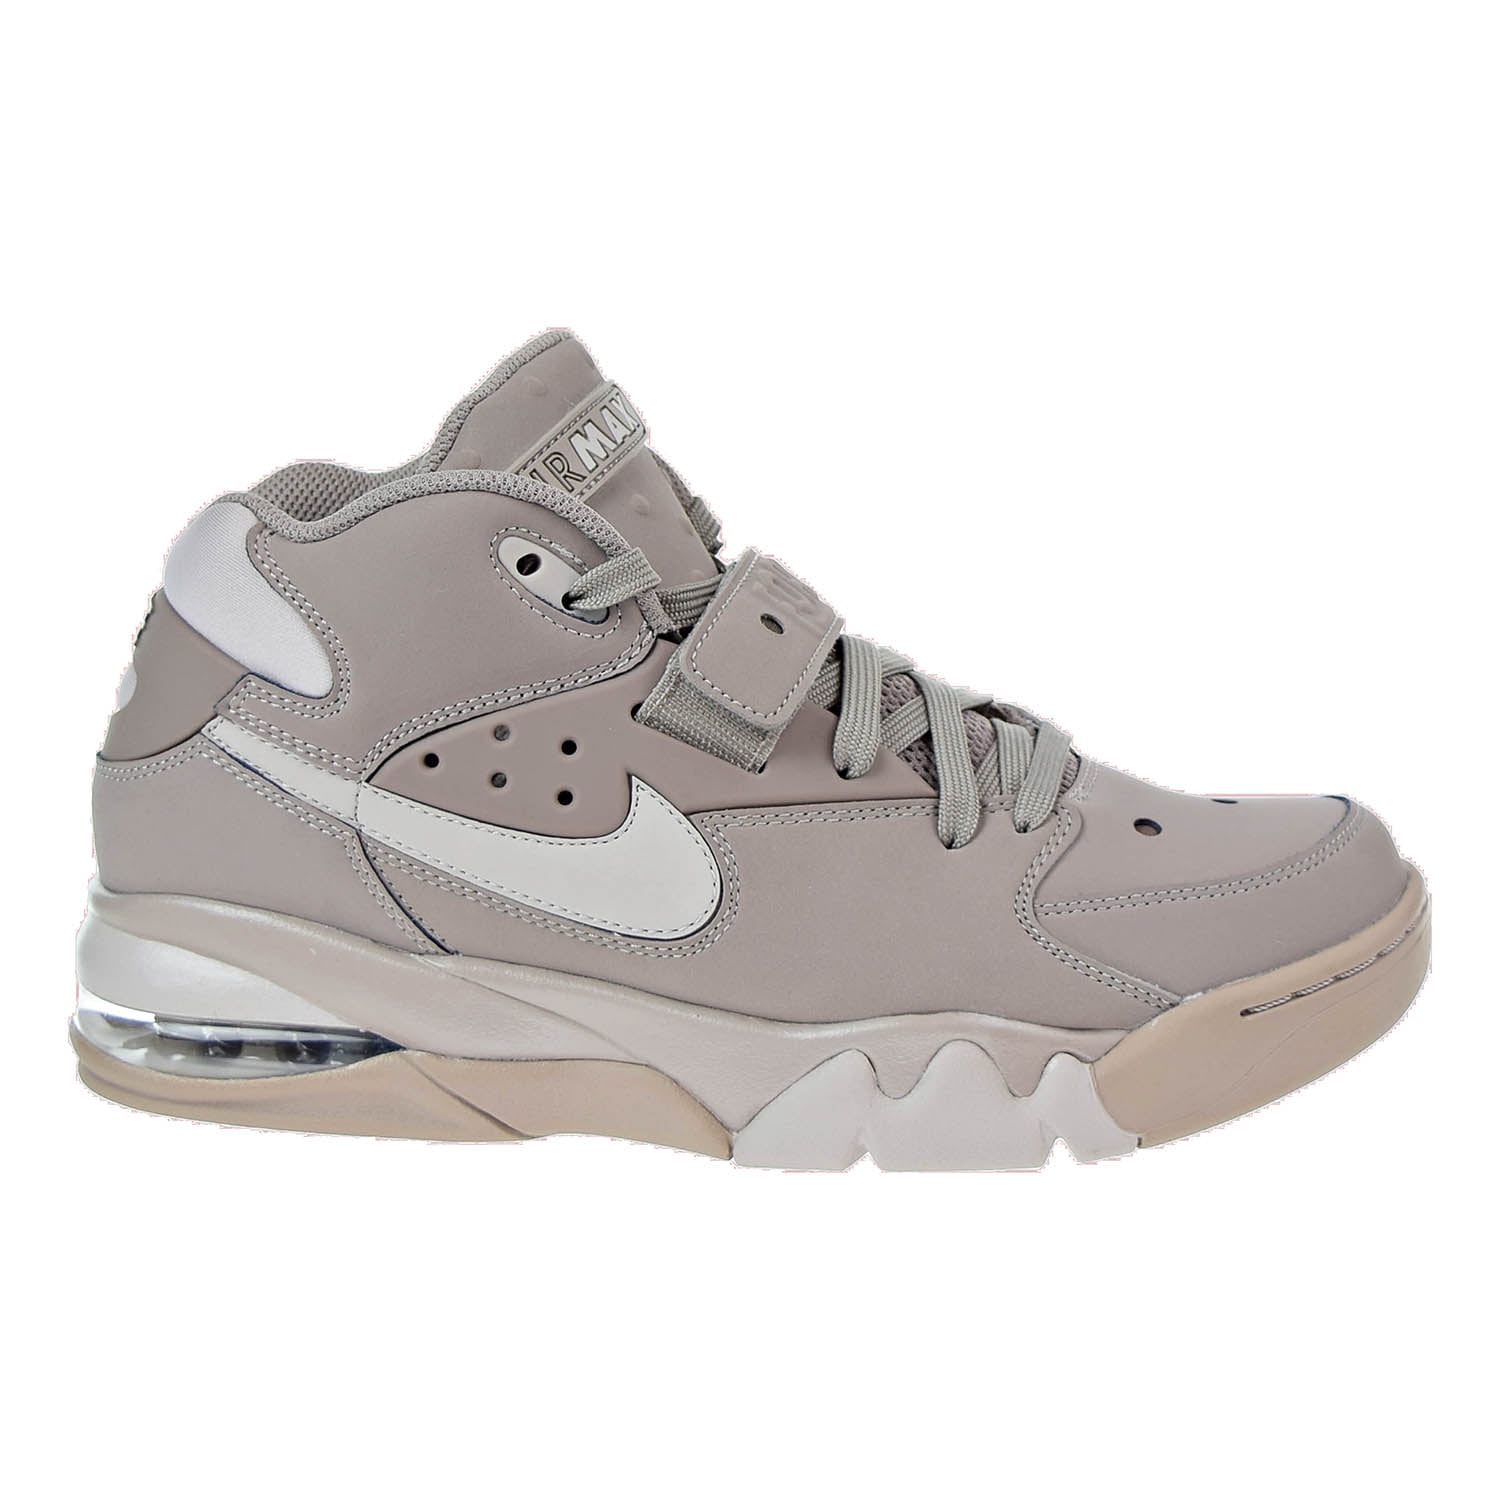 Schadelijk Mitt Ongepast Nike Air Force Max Mens's Shoes Sepia Stone/Moon Particle ah5534-200 (10  D(M) US) - Walmart.com